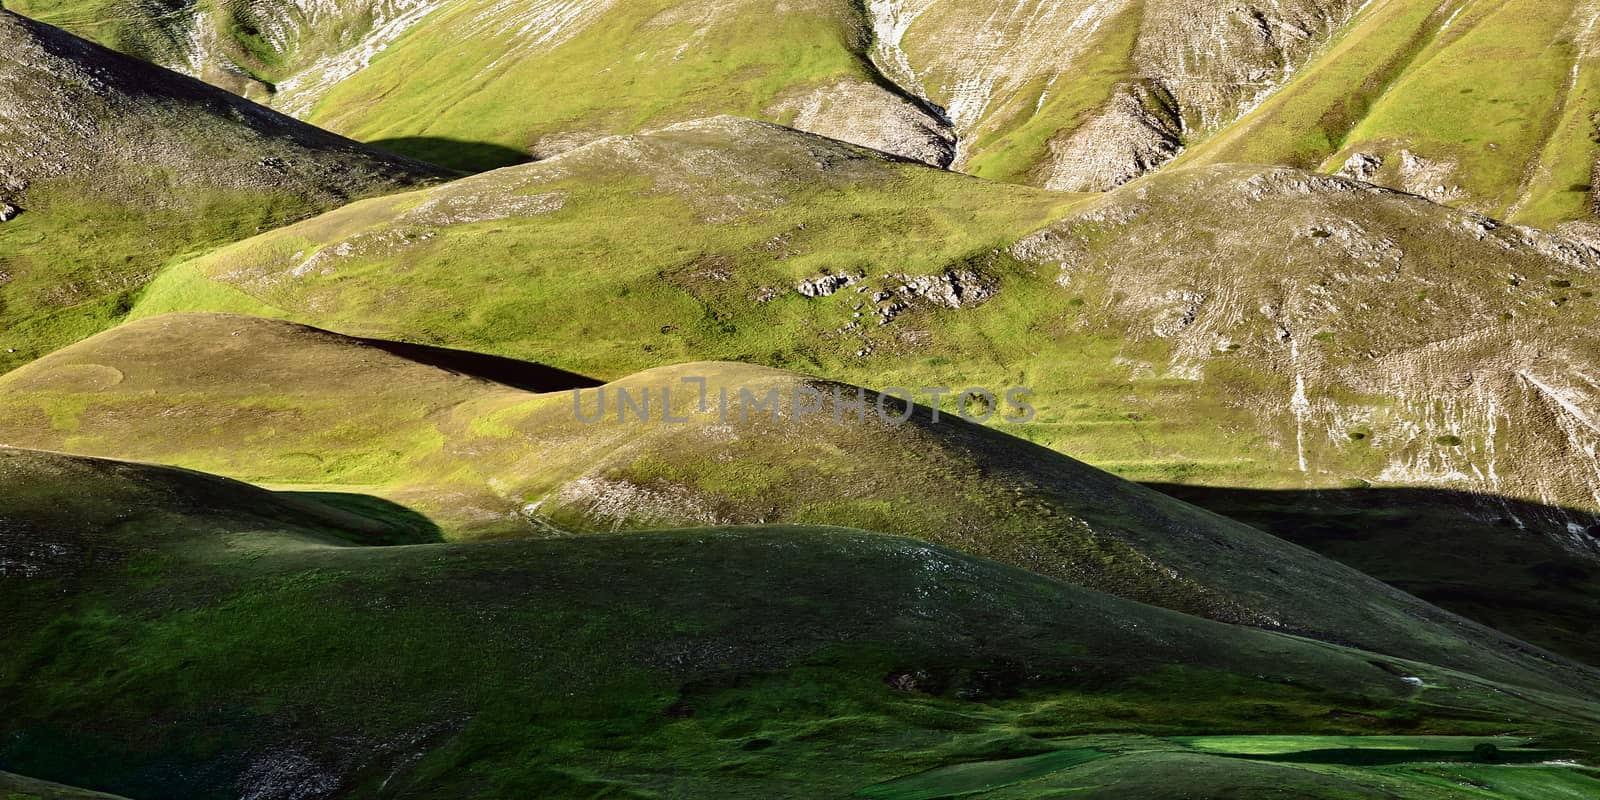 Green hills near Castelluccio of Norcia, Italy by LuigiMorbidelli